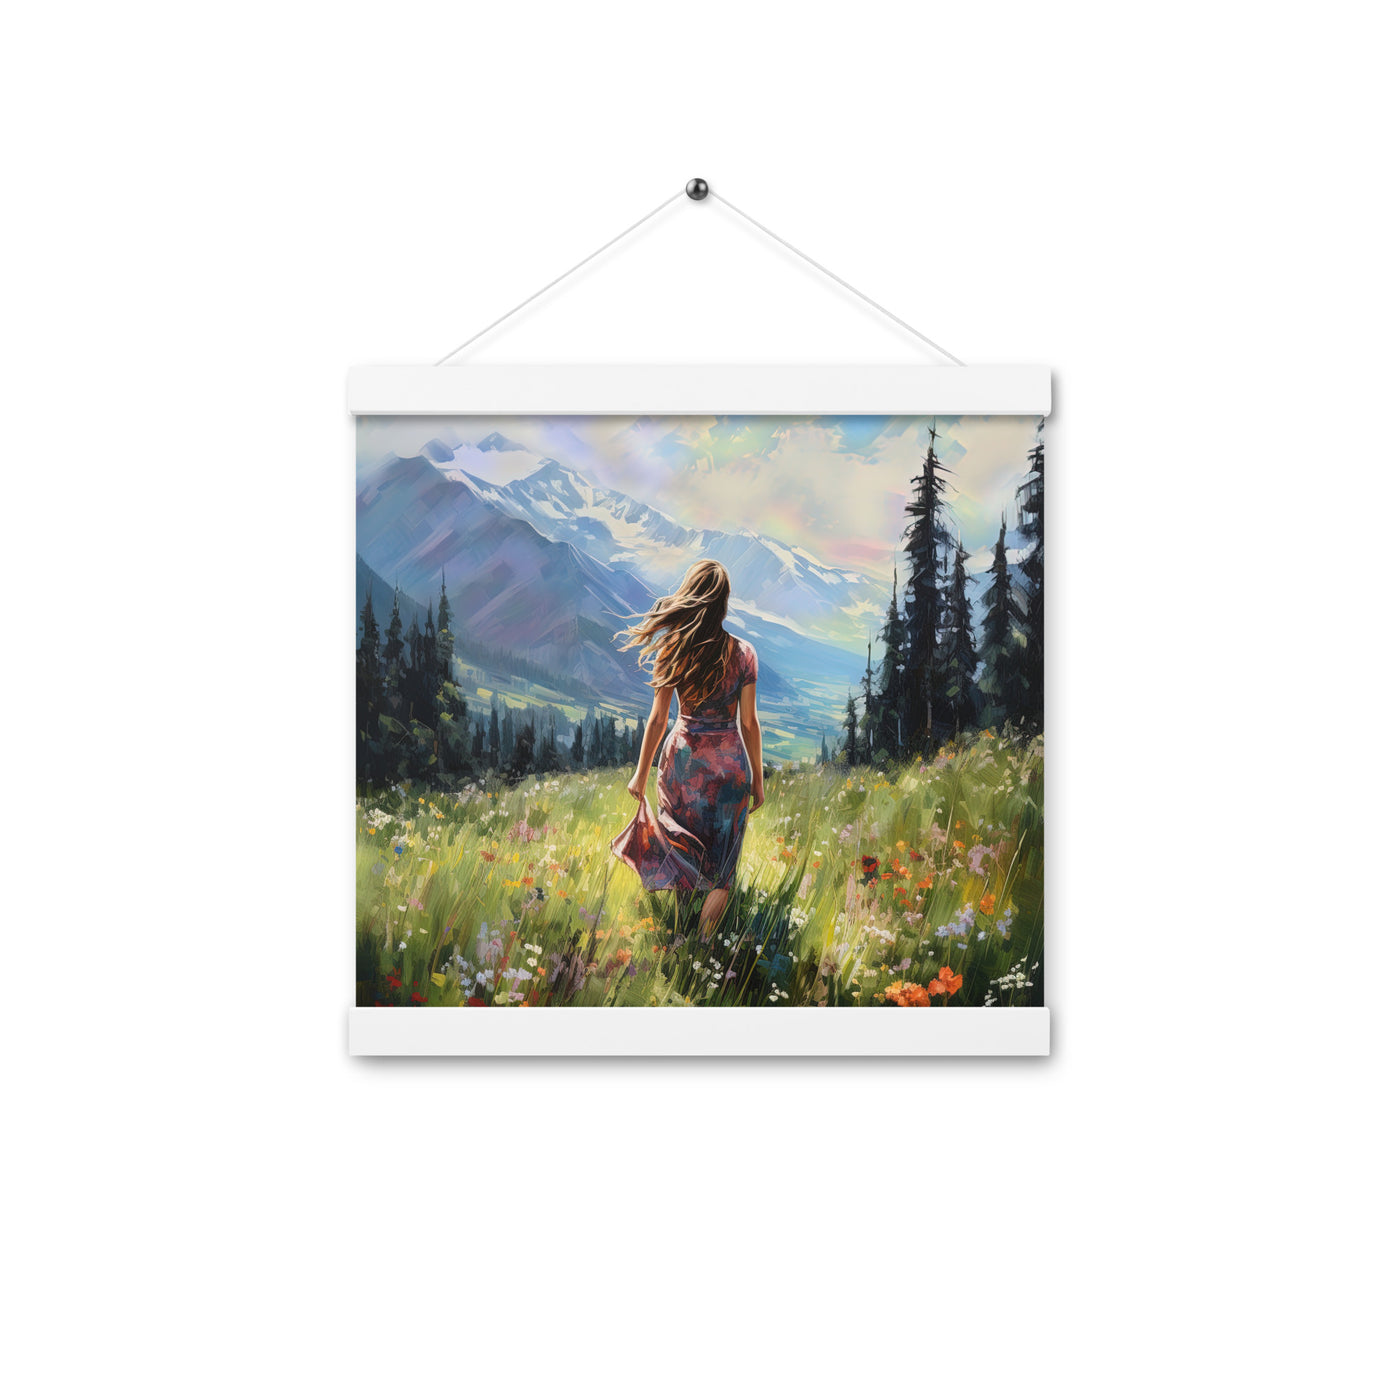 Frau mit langen Kleid im Feld mit Blumen - Berge im Hintergrund - Malerei - Premium Poster mit Aufhängung berge xxx 30.5 x 30.5 cm